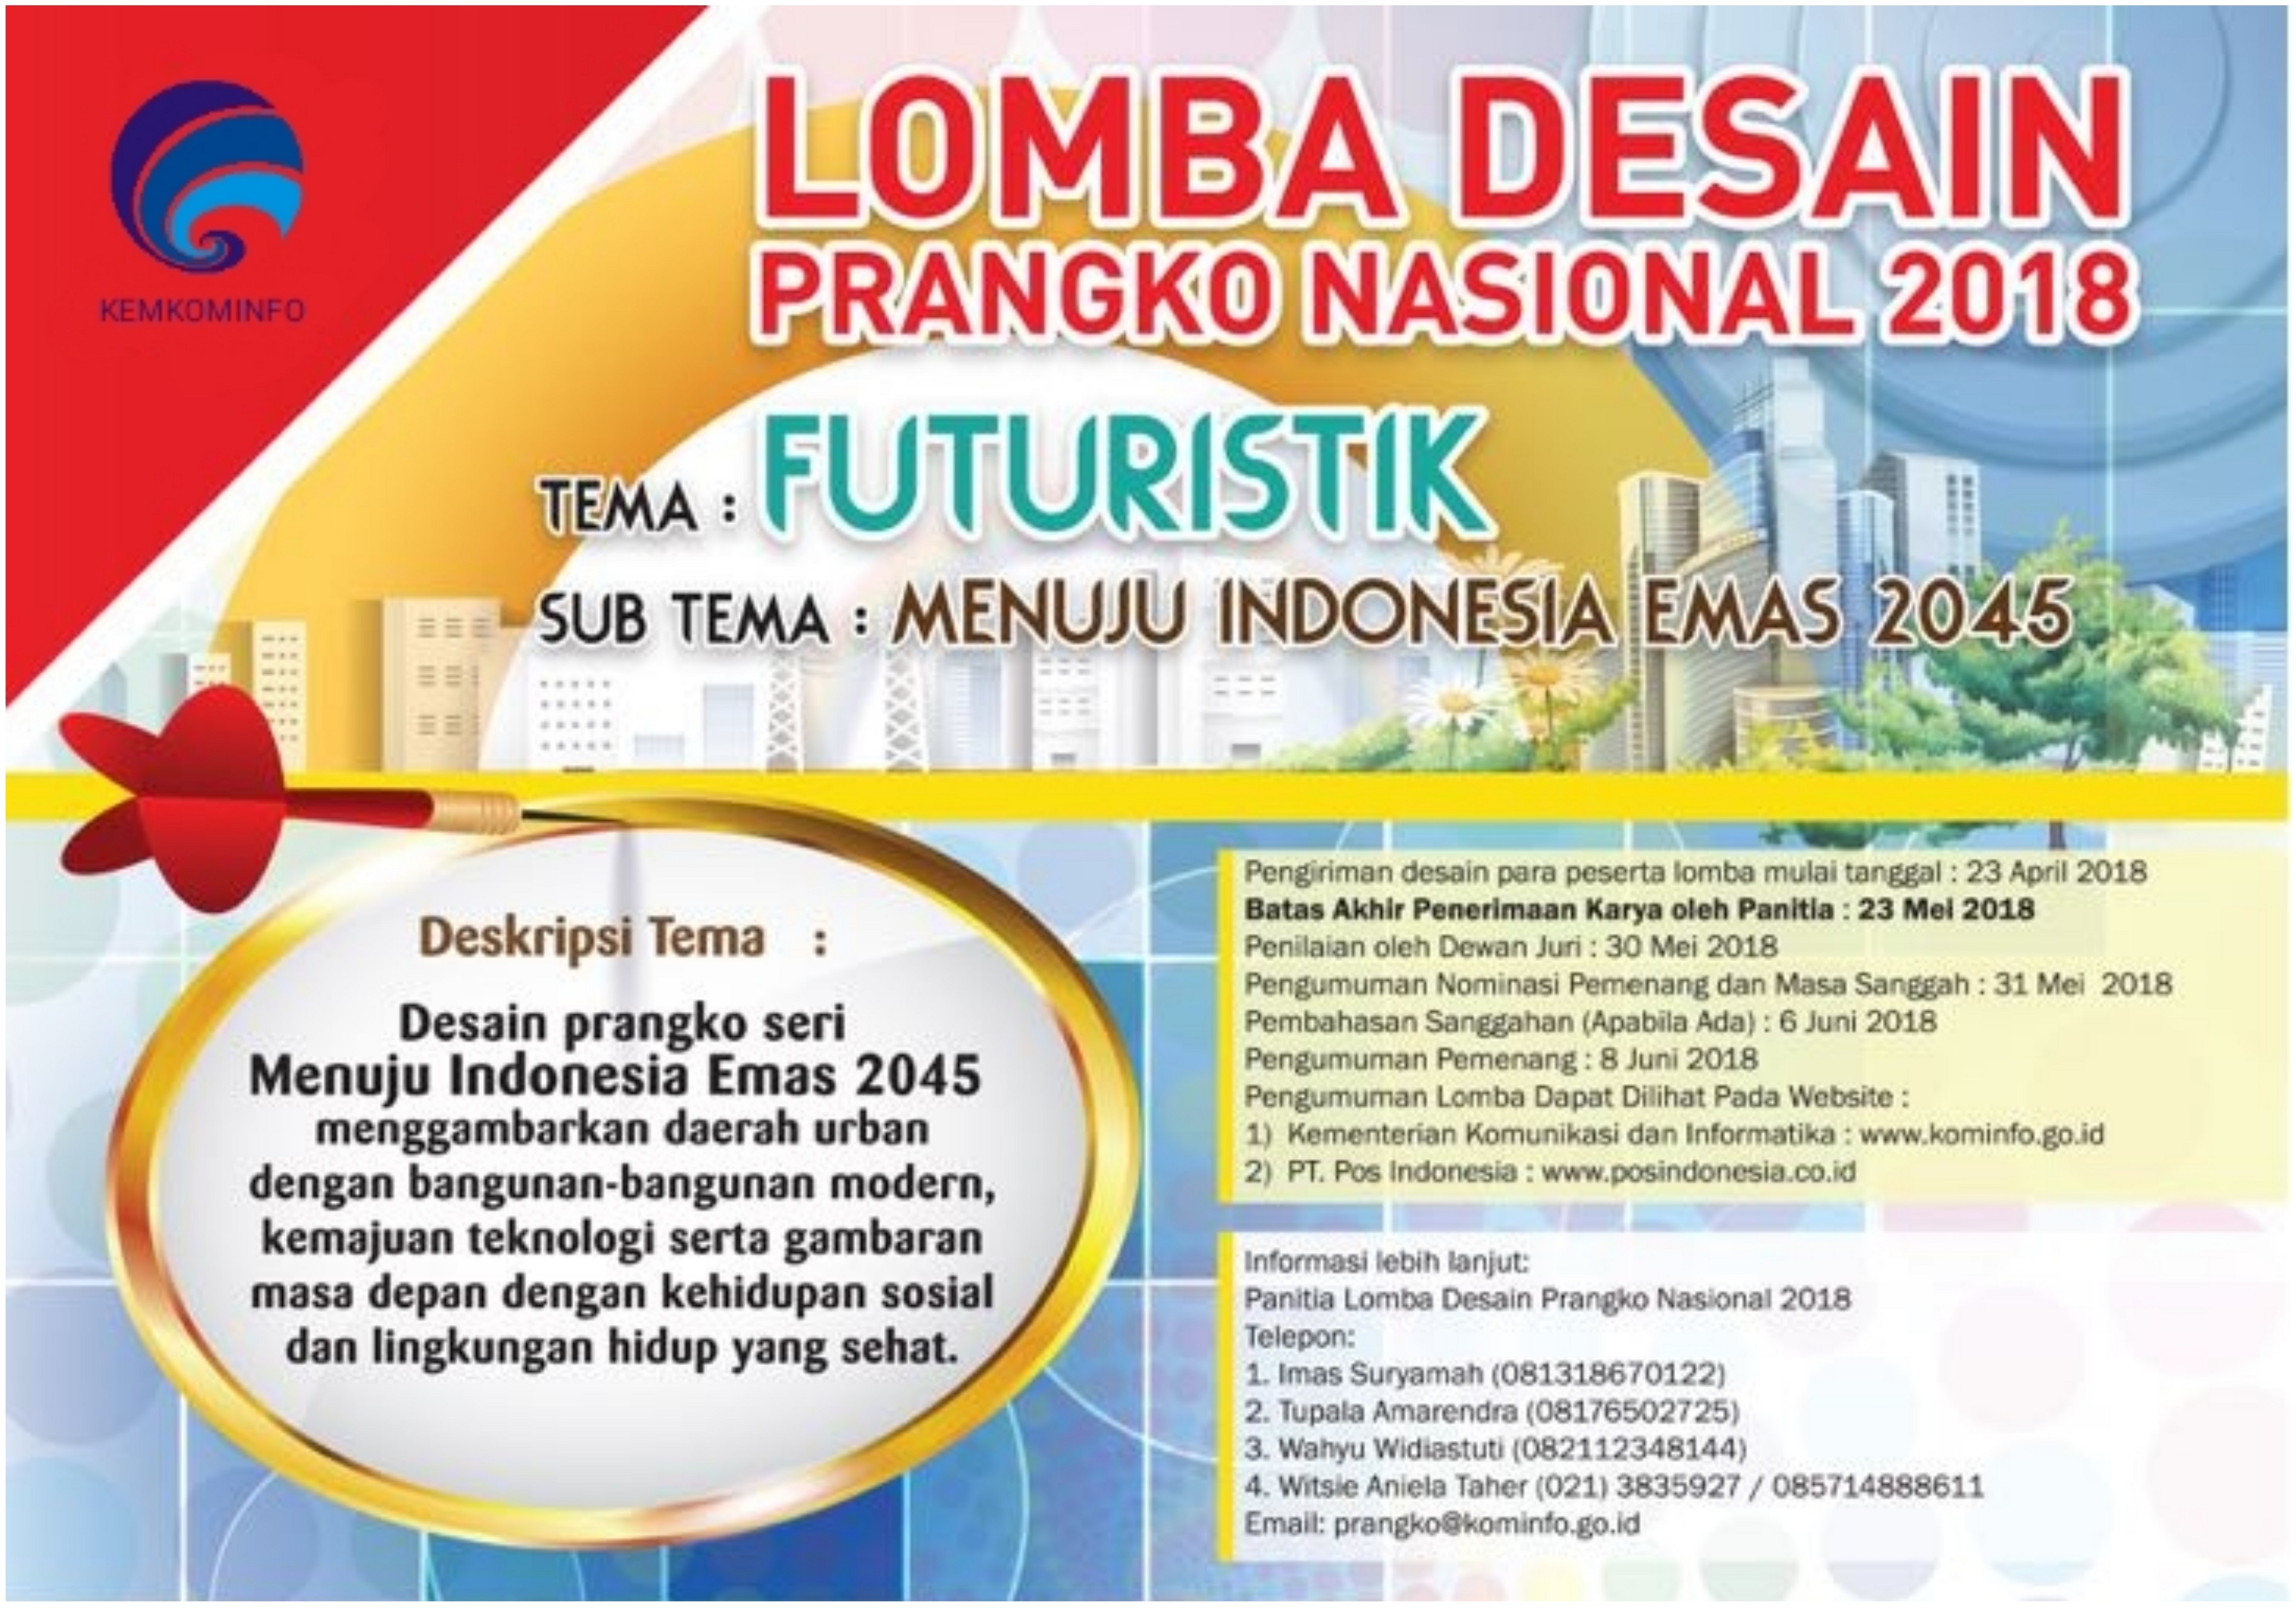 Lomba Desain Prangko Nasional (LDPN) Tahun 2018